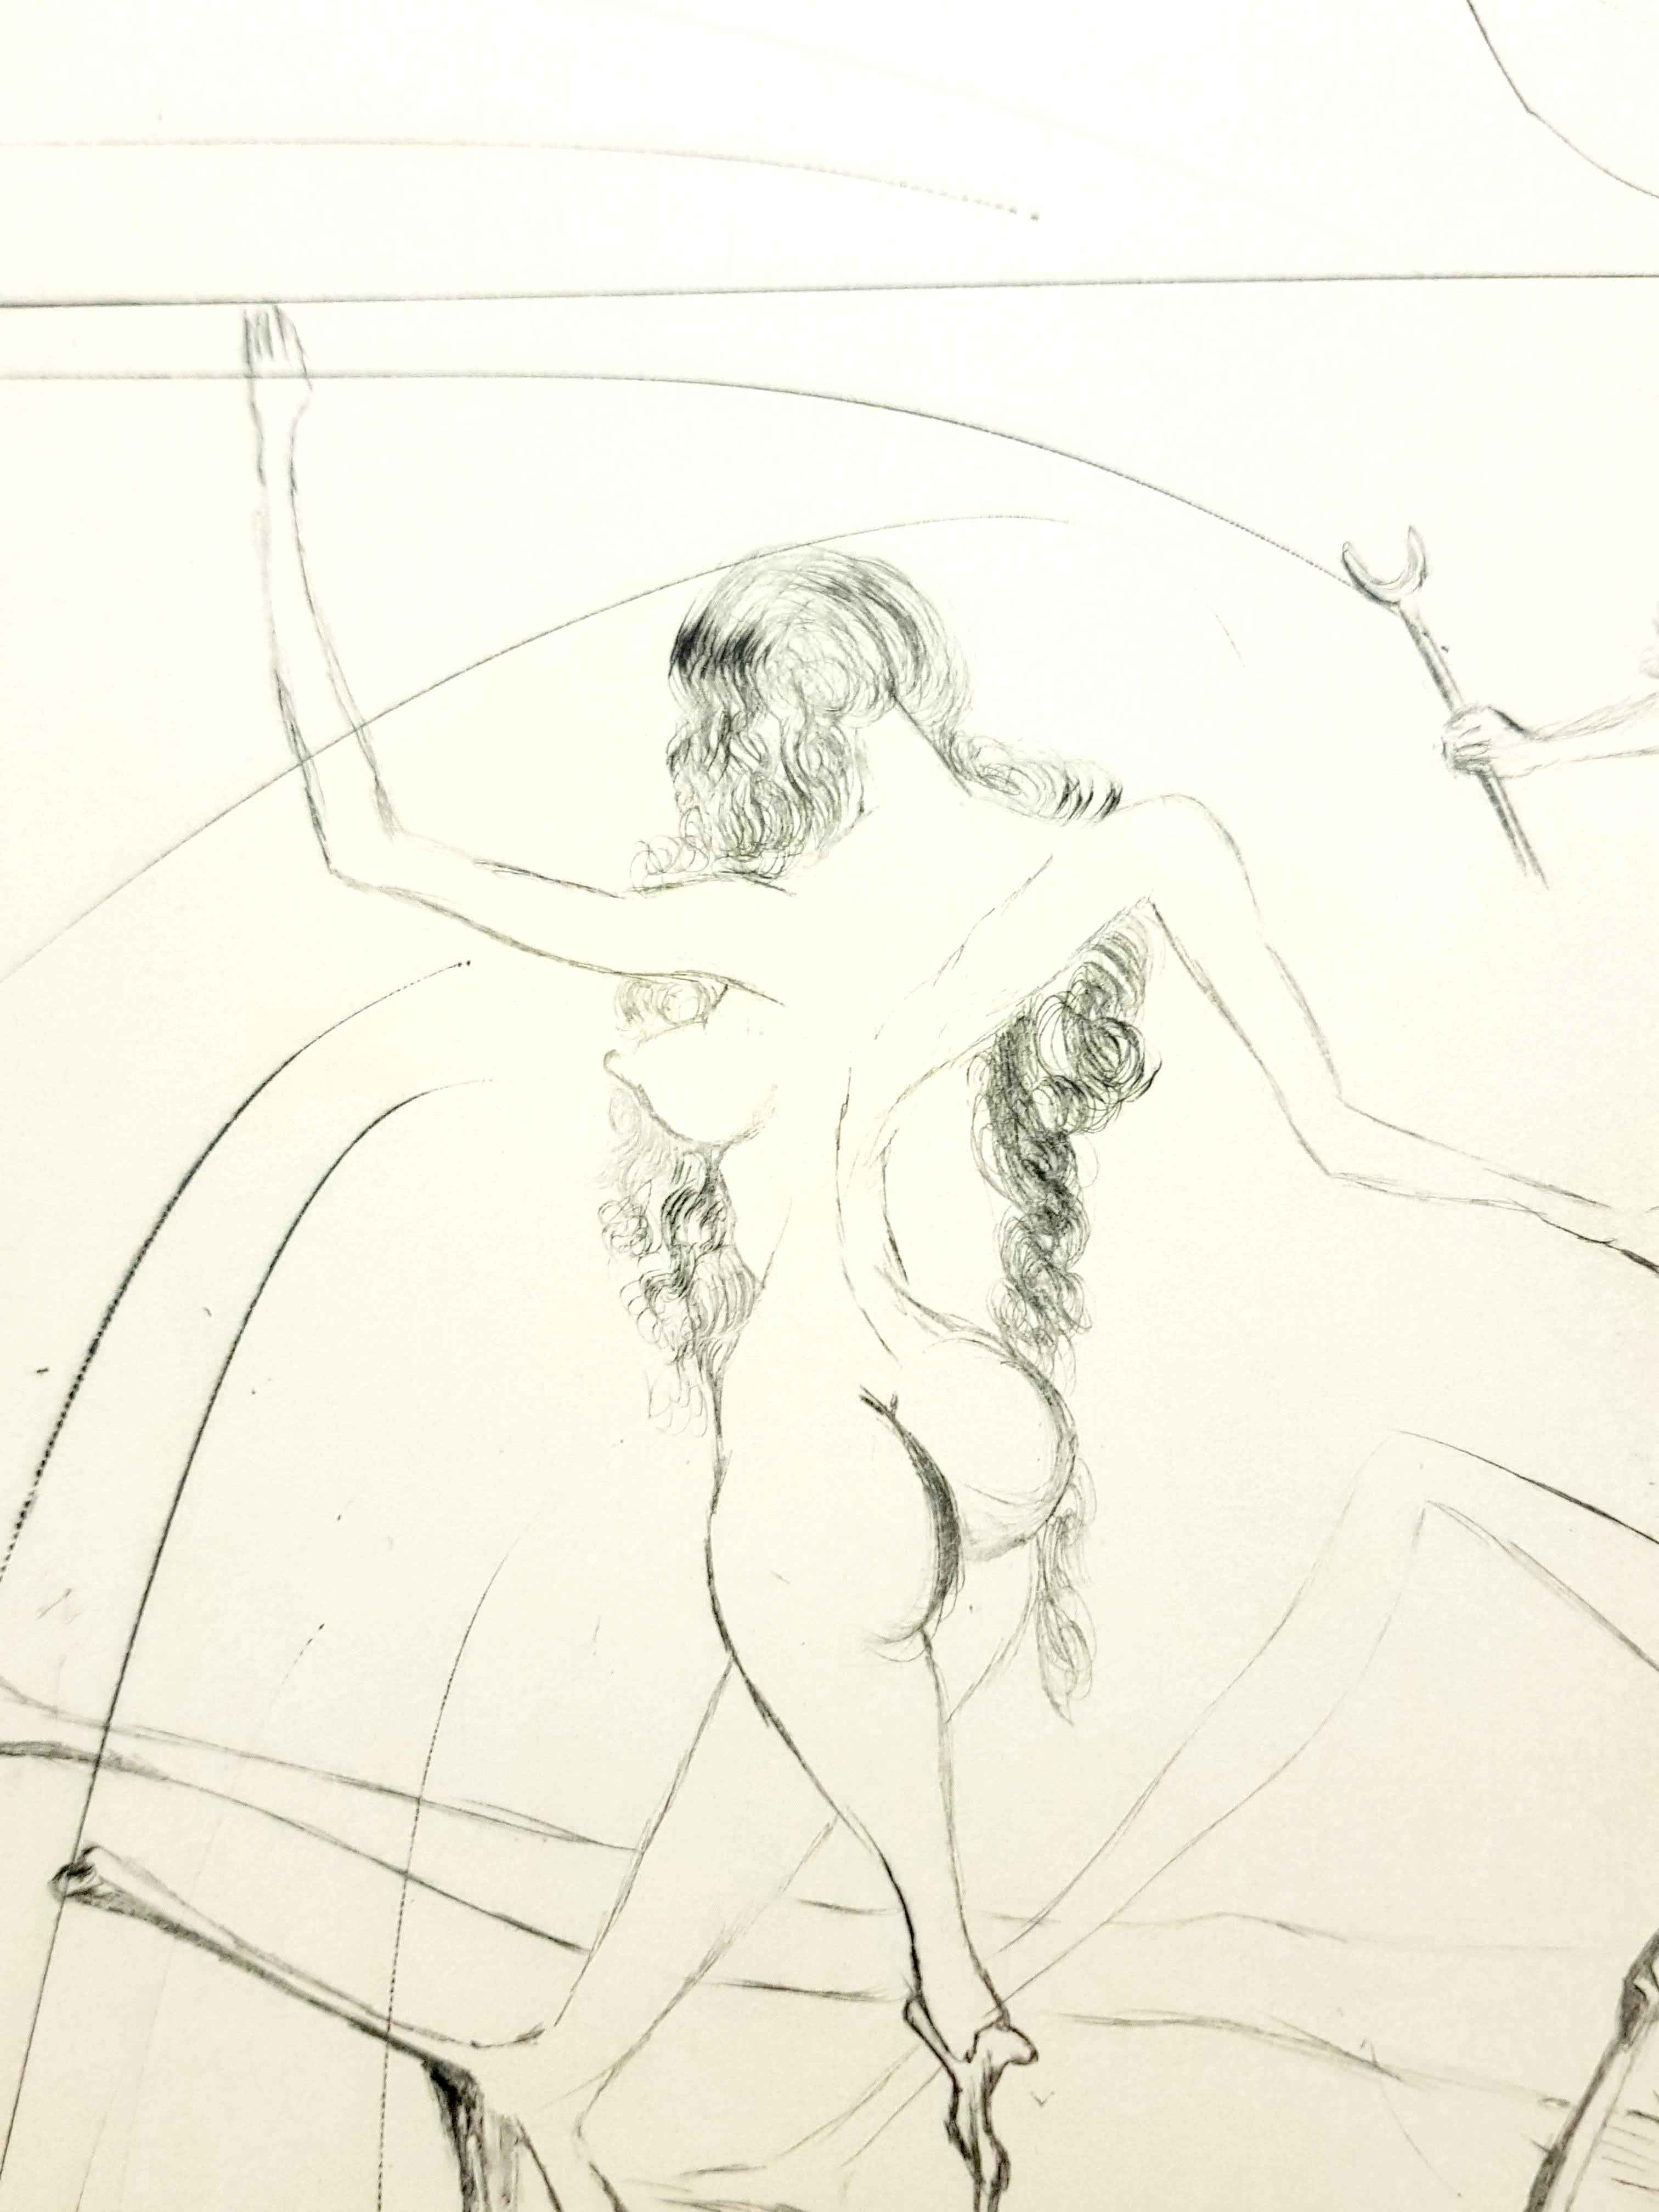 Salvador Dali - Frauen - Original-Radierung
Stempel Signiert 
Abmessungen: 38,5 x 28,5 cm
1969
Referenzen : Feld 69-1 / Michler & Lopsinger 305